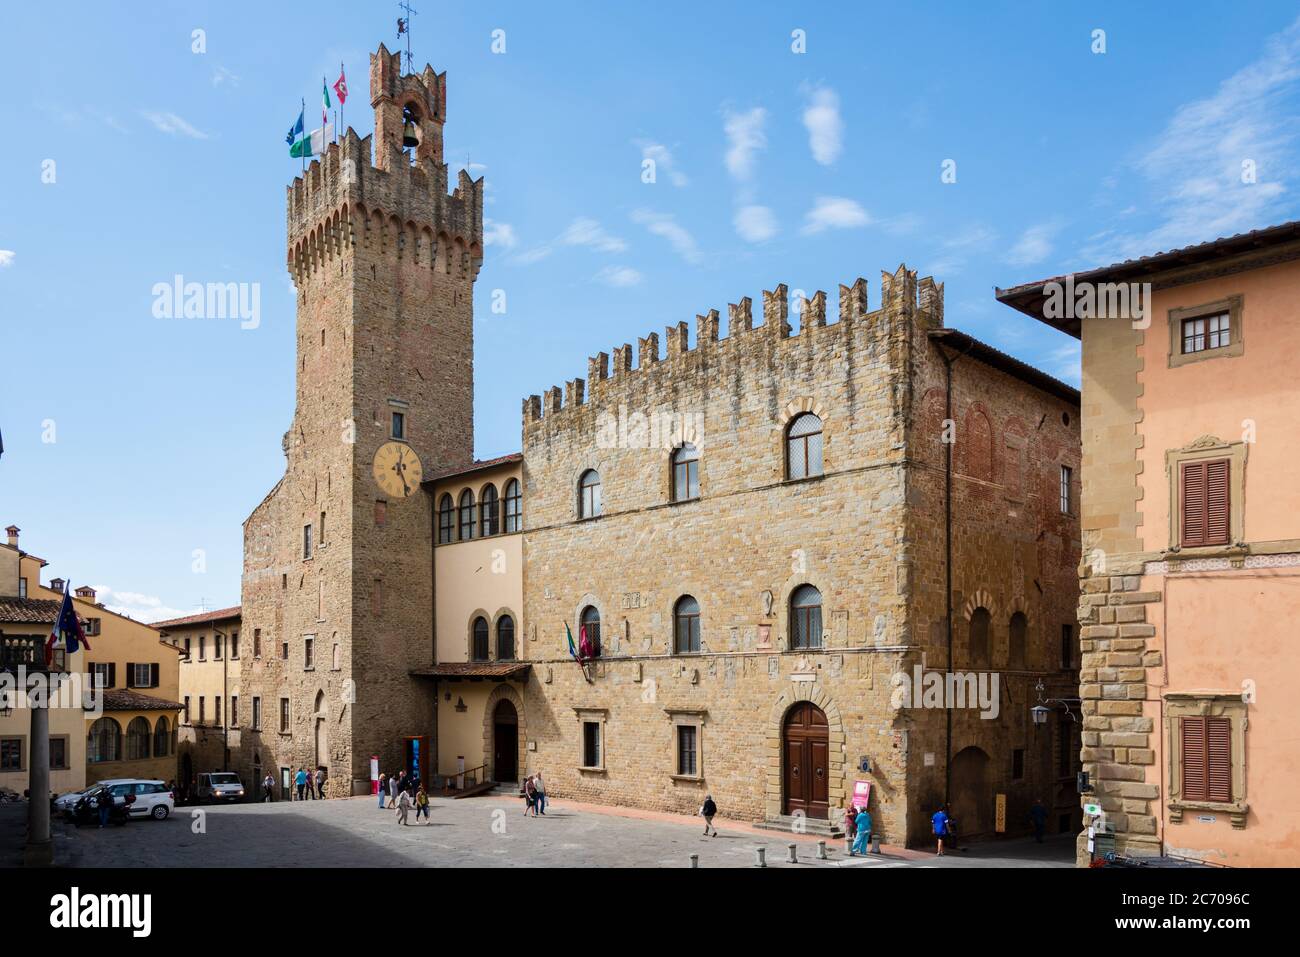 Arezzo ist eine Stadt mit 100 000 Einwohnern in der mittelitalienischen Region Toskana, nordöstlich von Siena. Sie ist Hauptstadt der gleichnamigen Pr Banque D'Images